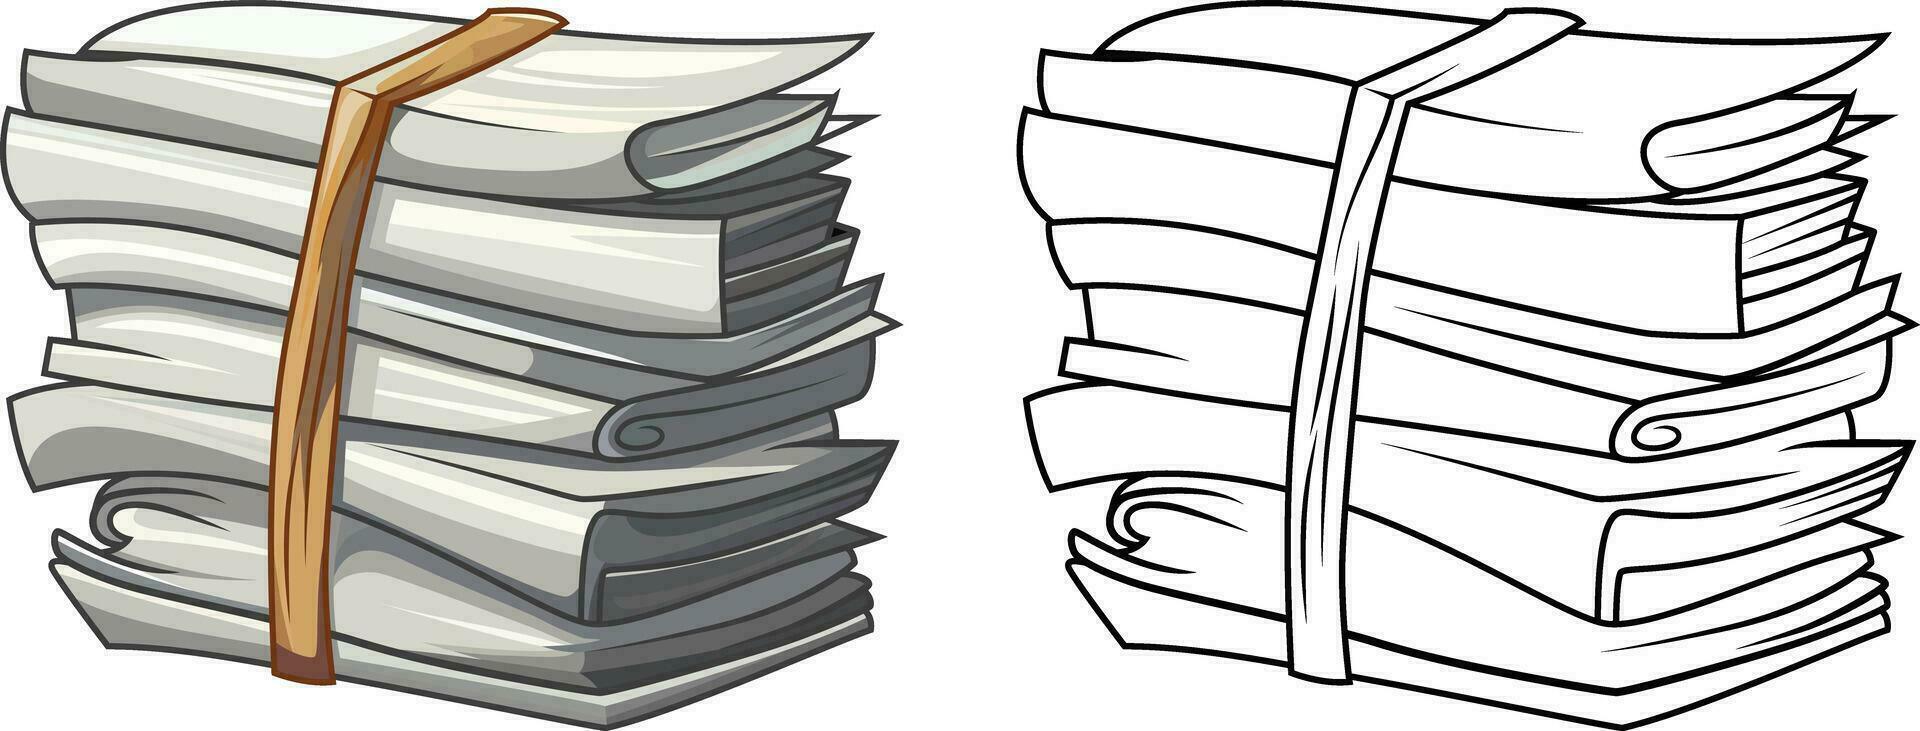 paquet de papiers dessin animé style vecteur illustration , pile de papiers les documents , empiler de les documents ou blanc papiers Stock vecteur image